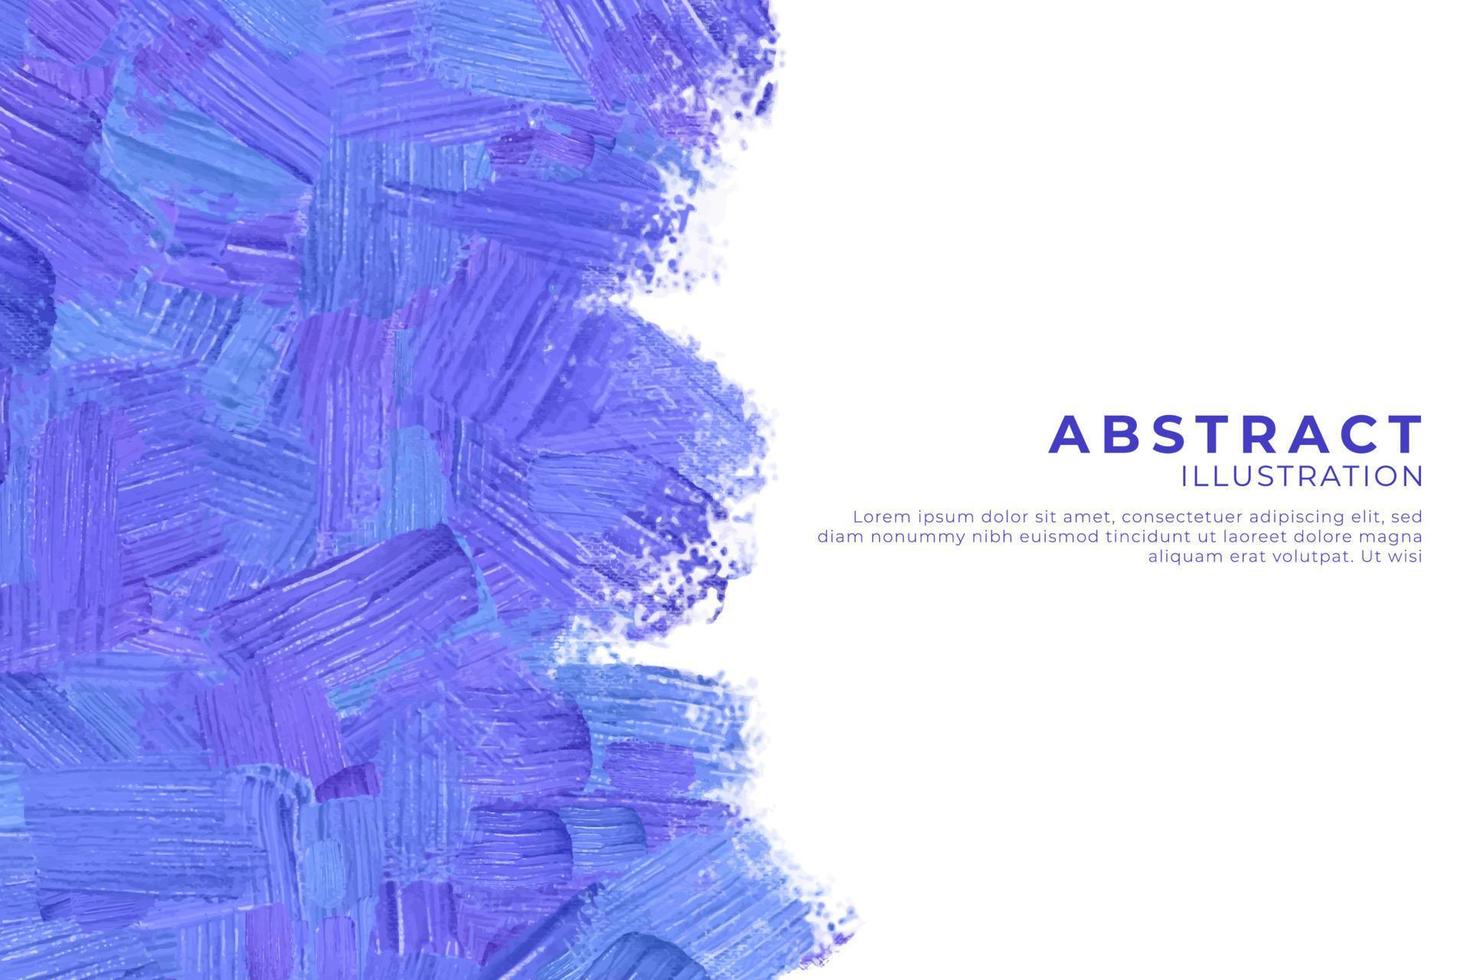 abstrakt akvarell texturerad bakgrund. design för din dejt, vykort, banner, logotyp. vektor